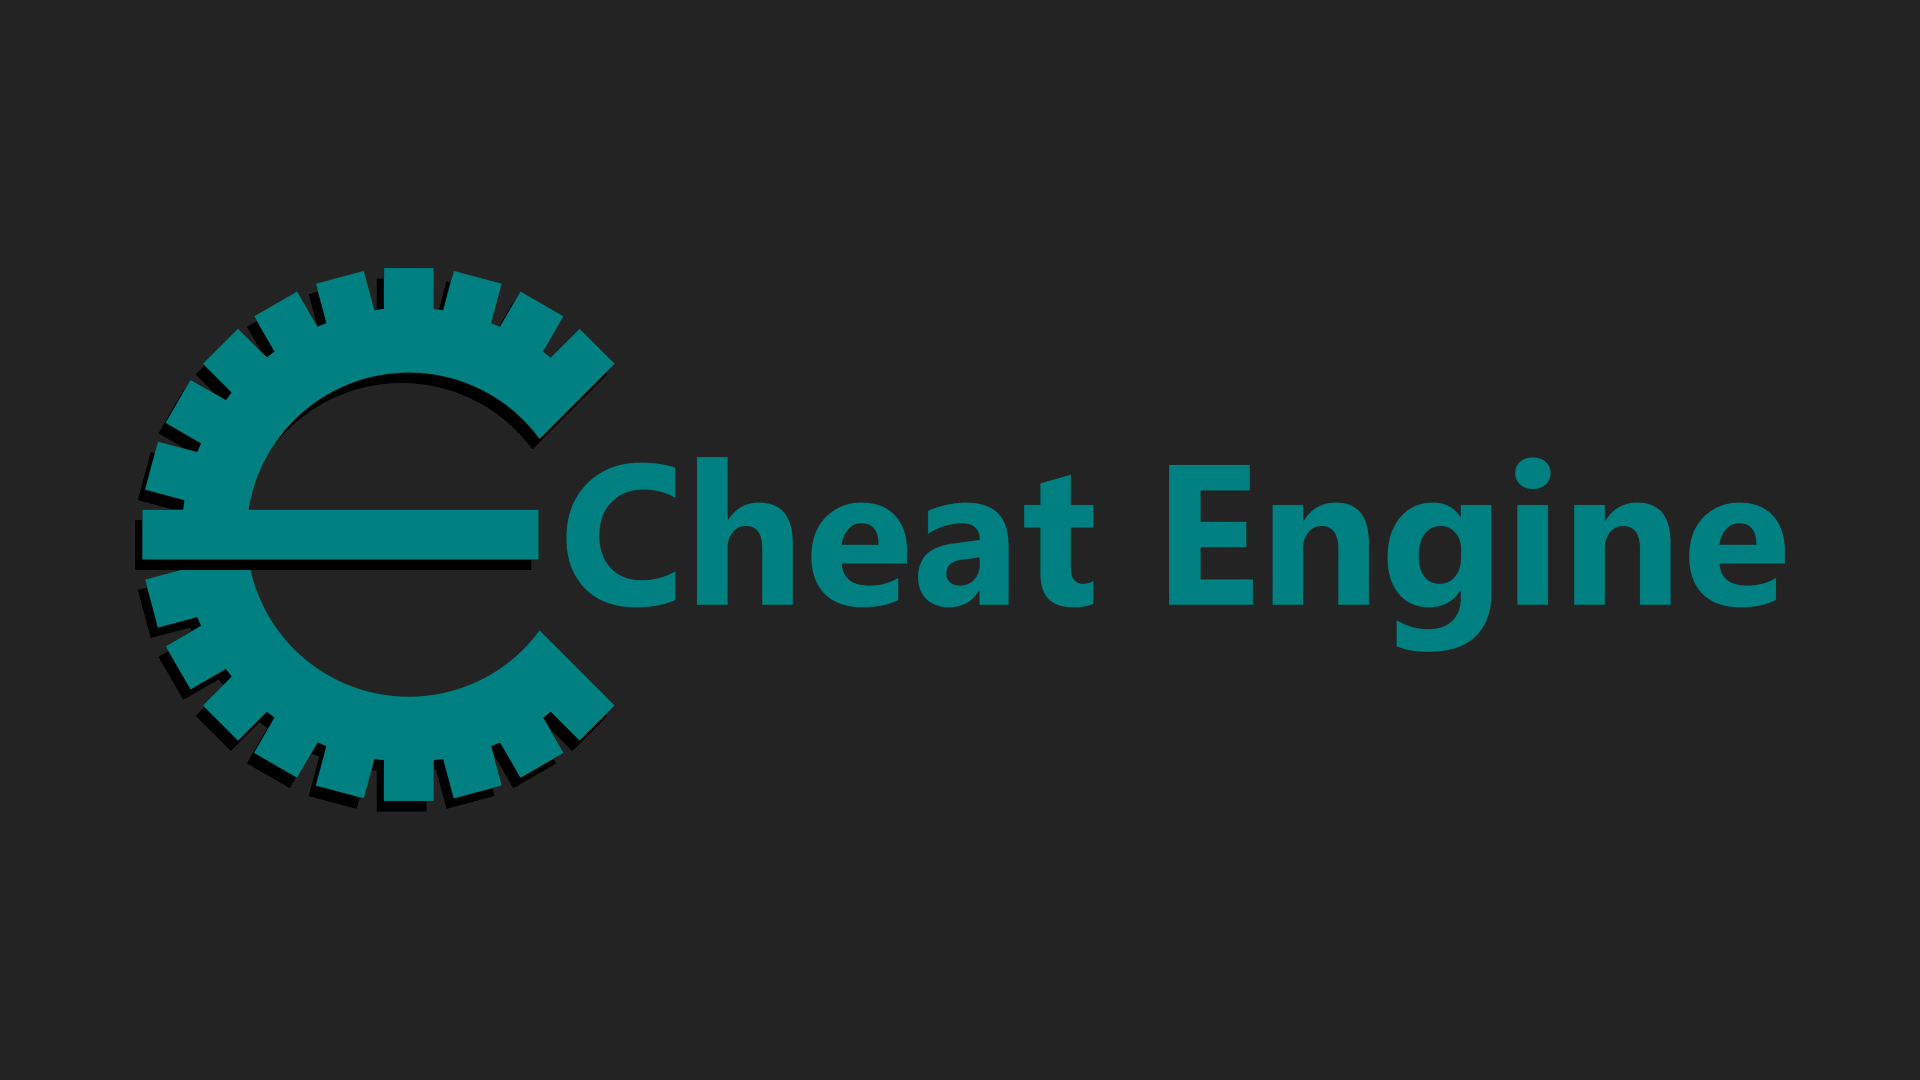 Cheat Engine 7.4 のソースコードからビルドして Cheat Engine exe ファイルを生成する方法